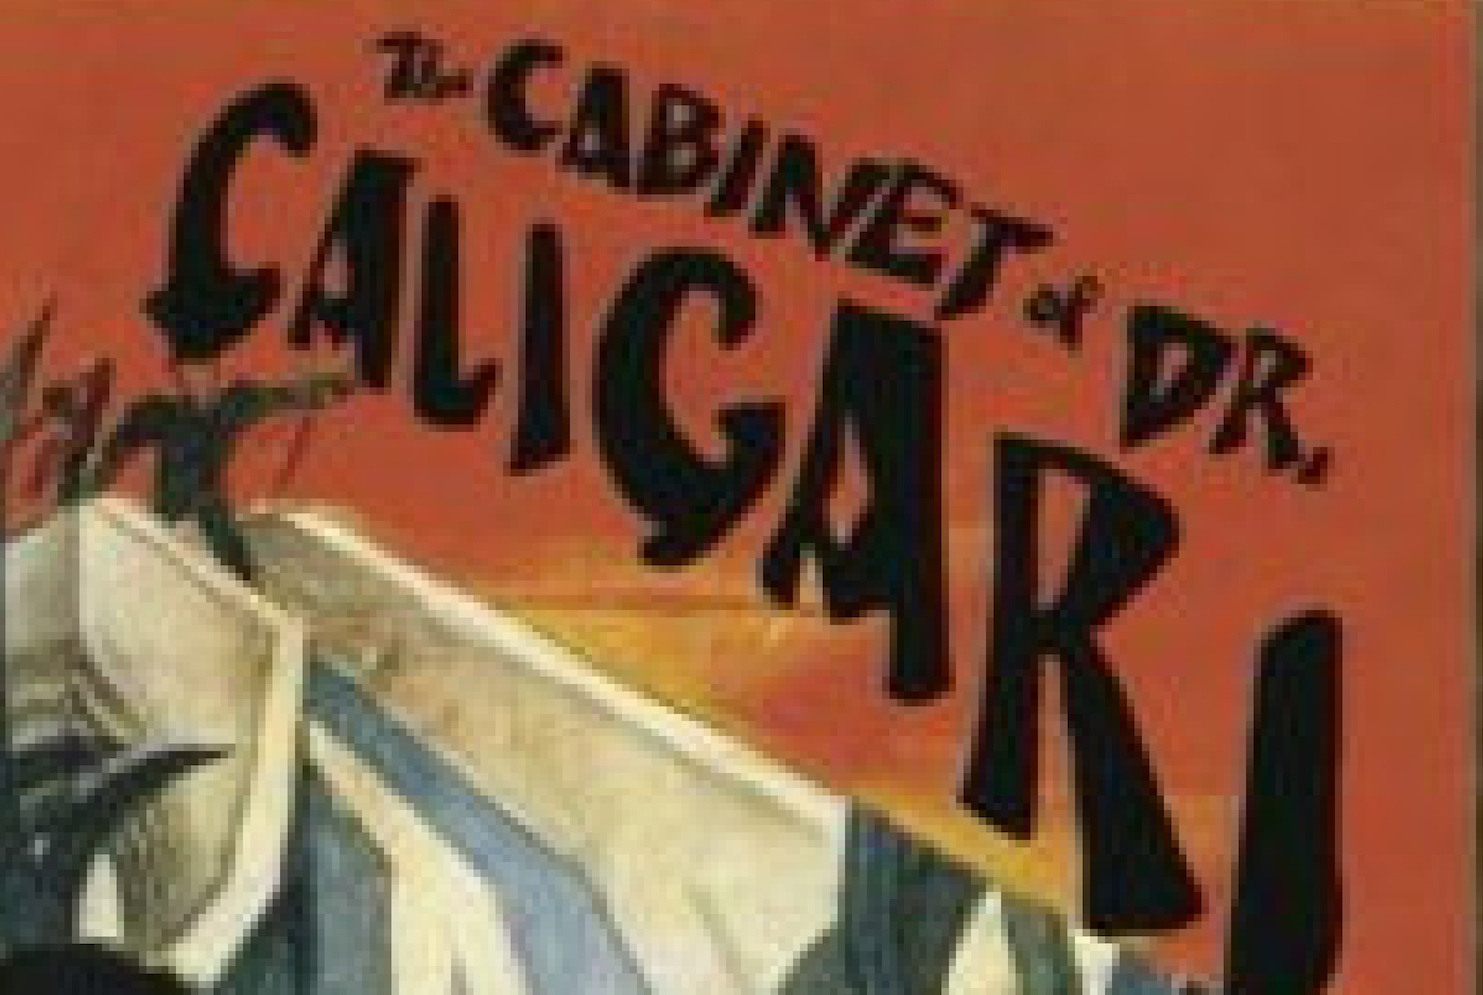 Dr. Caligari